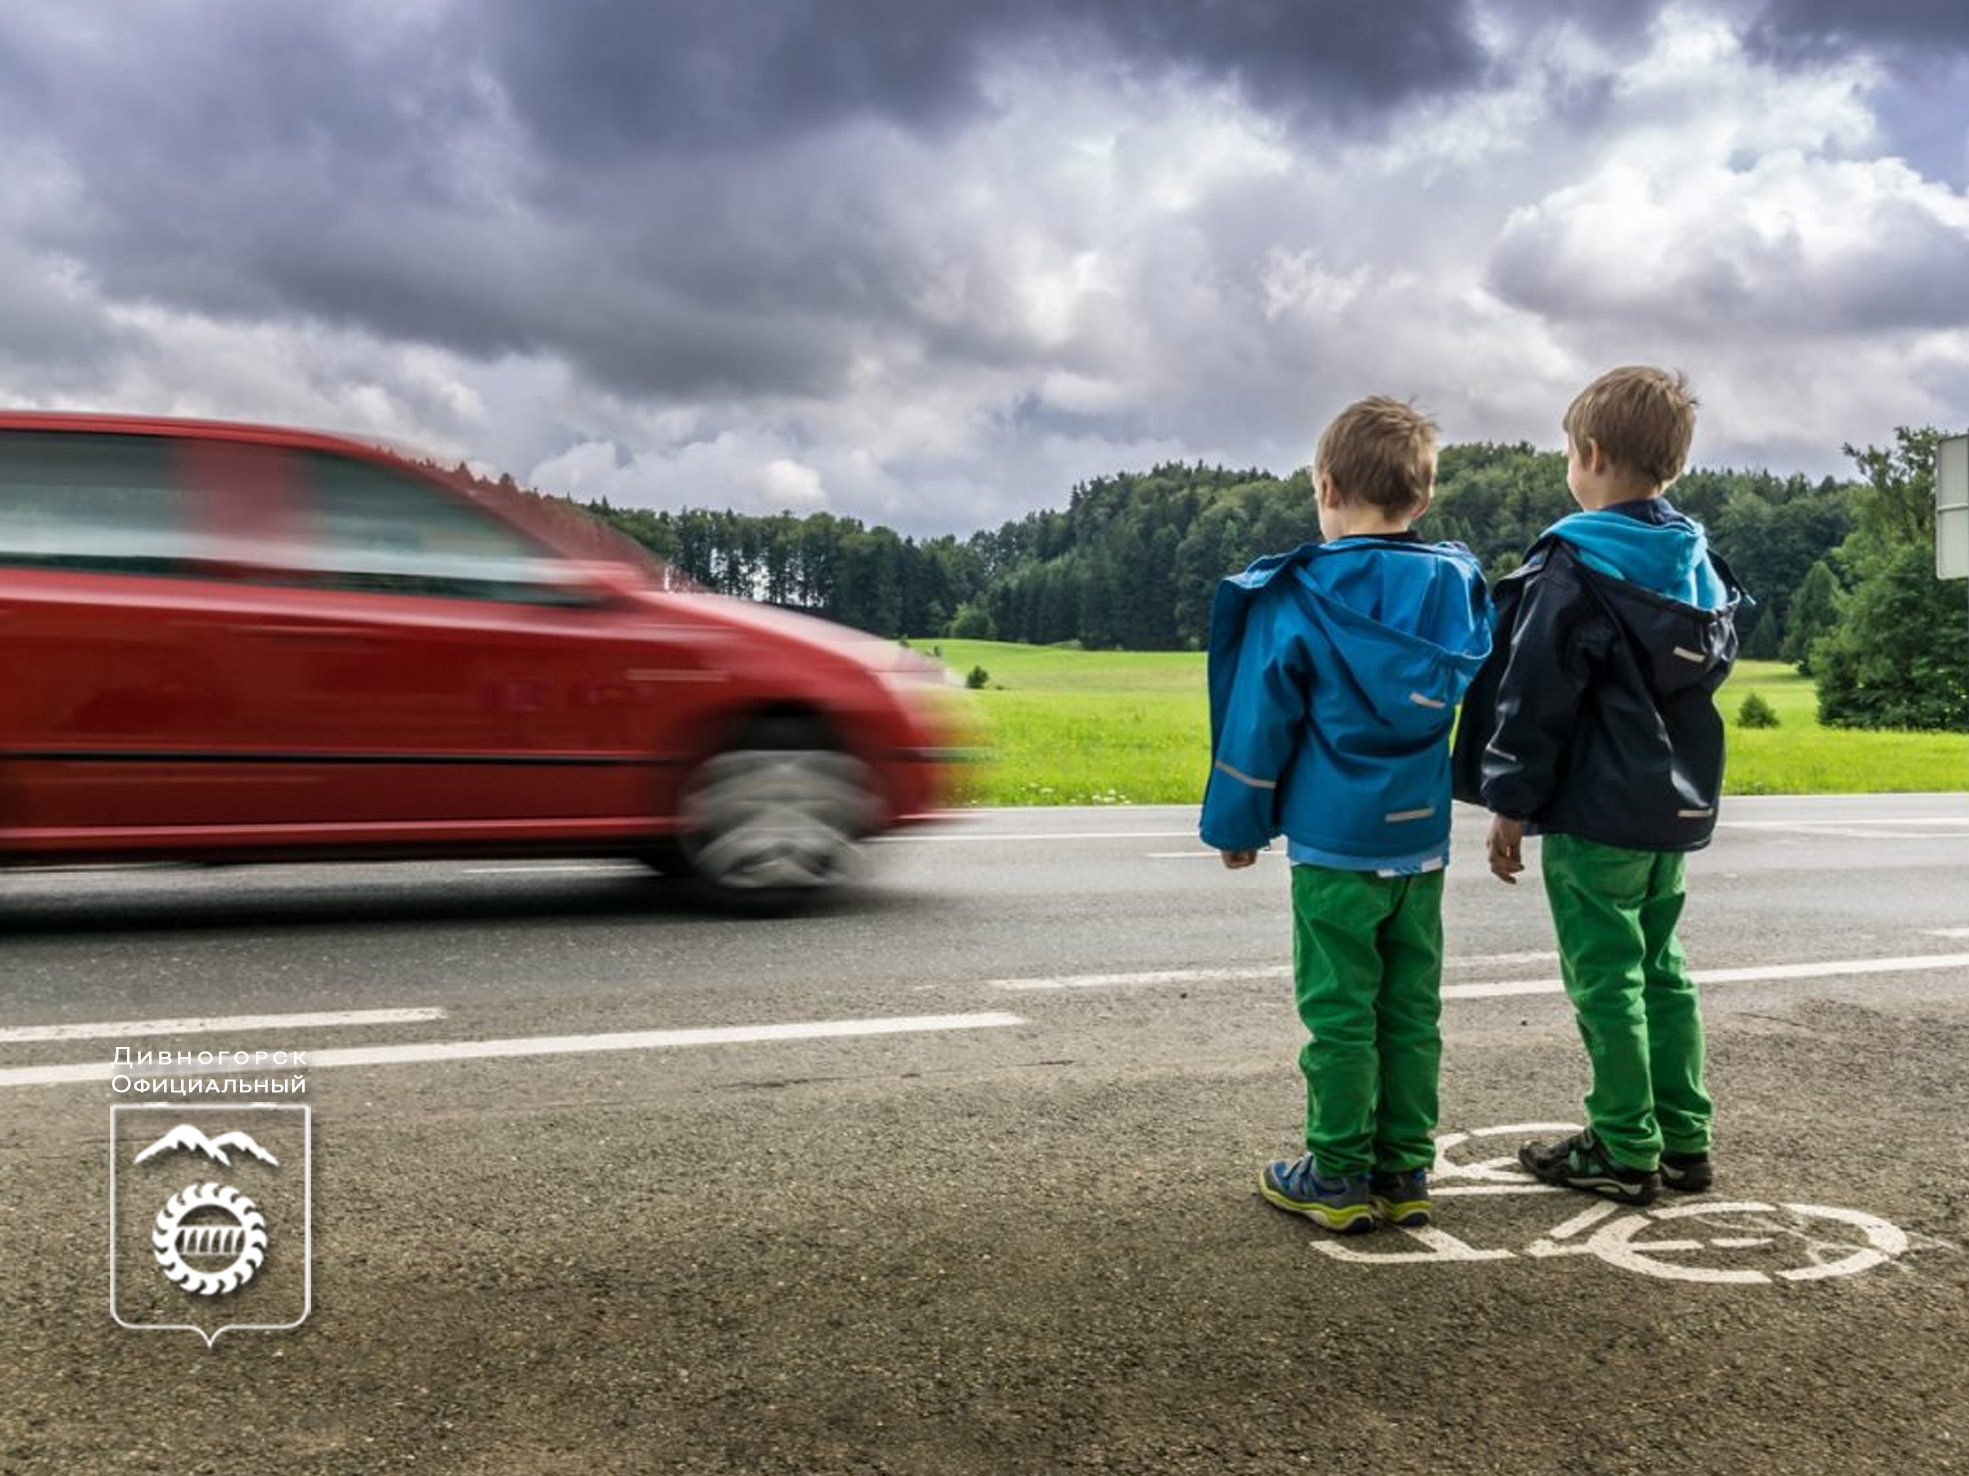 Дети под машину. Дети на дороге. Безопасность на дороге для детей. Дороги для детей. Детский травматизм на дорогах.